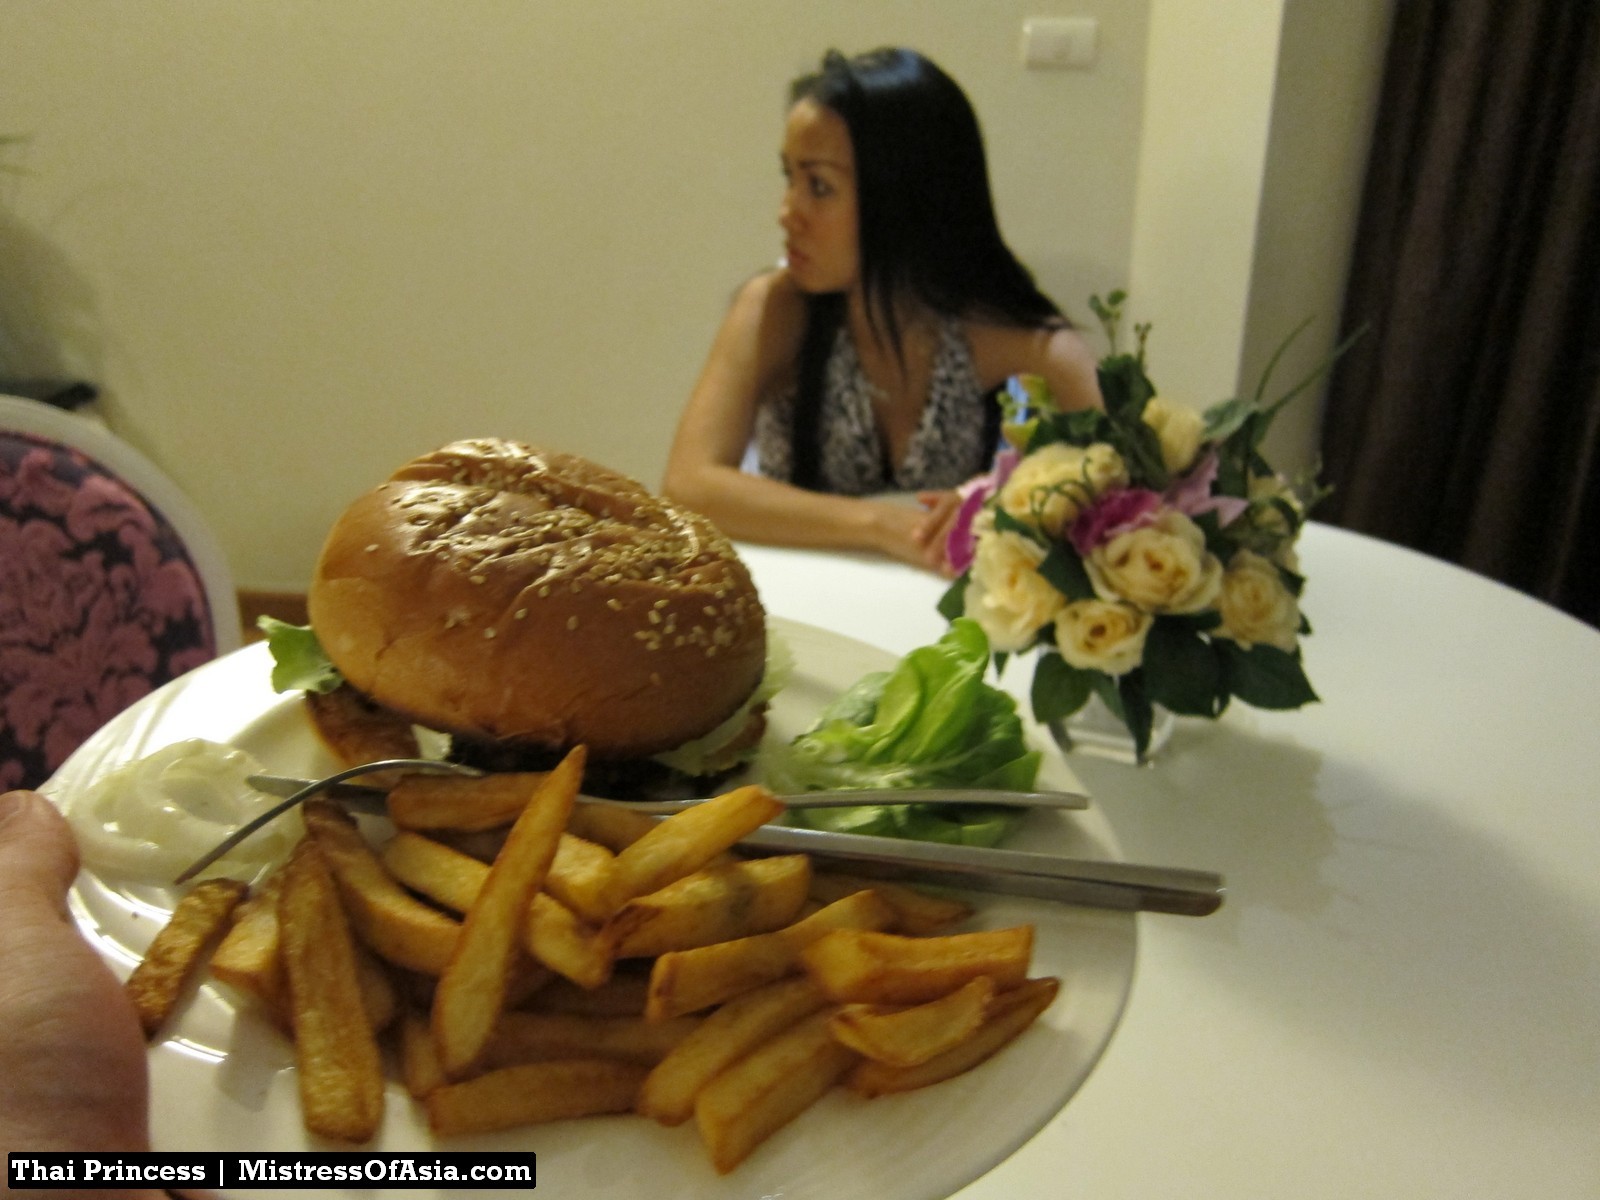 Principessa tailandese che mangia hamburger
 #69740238